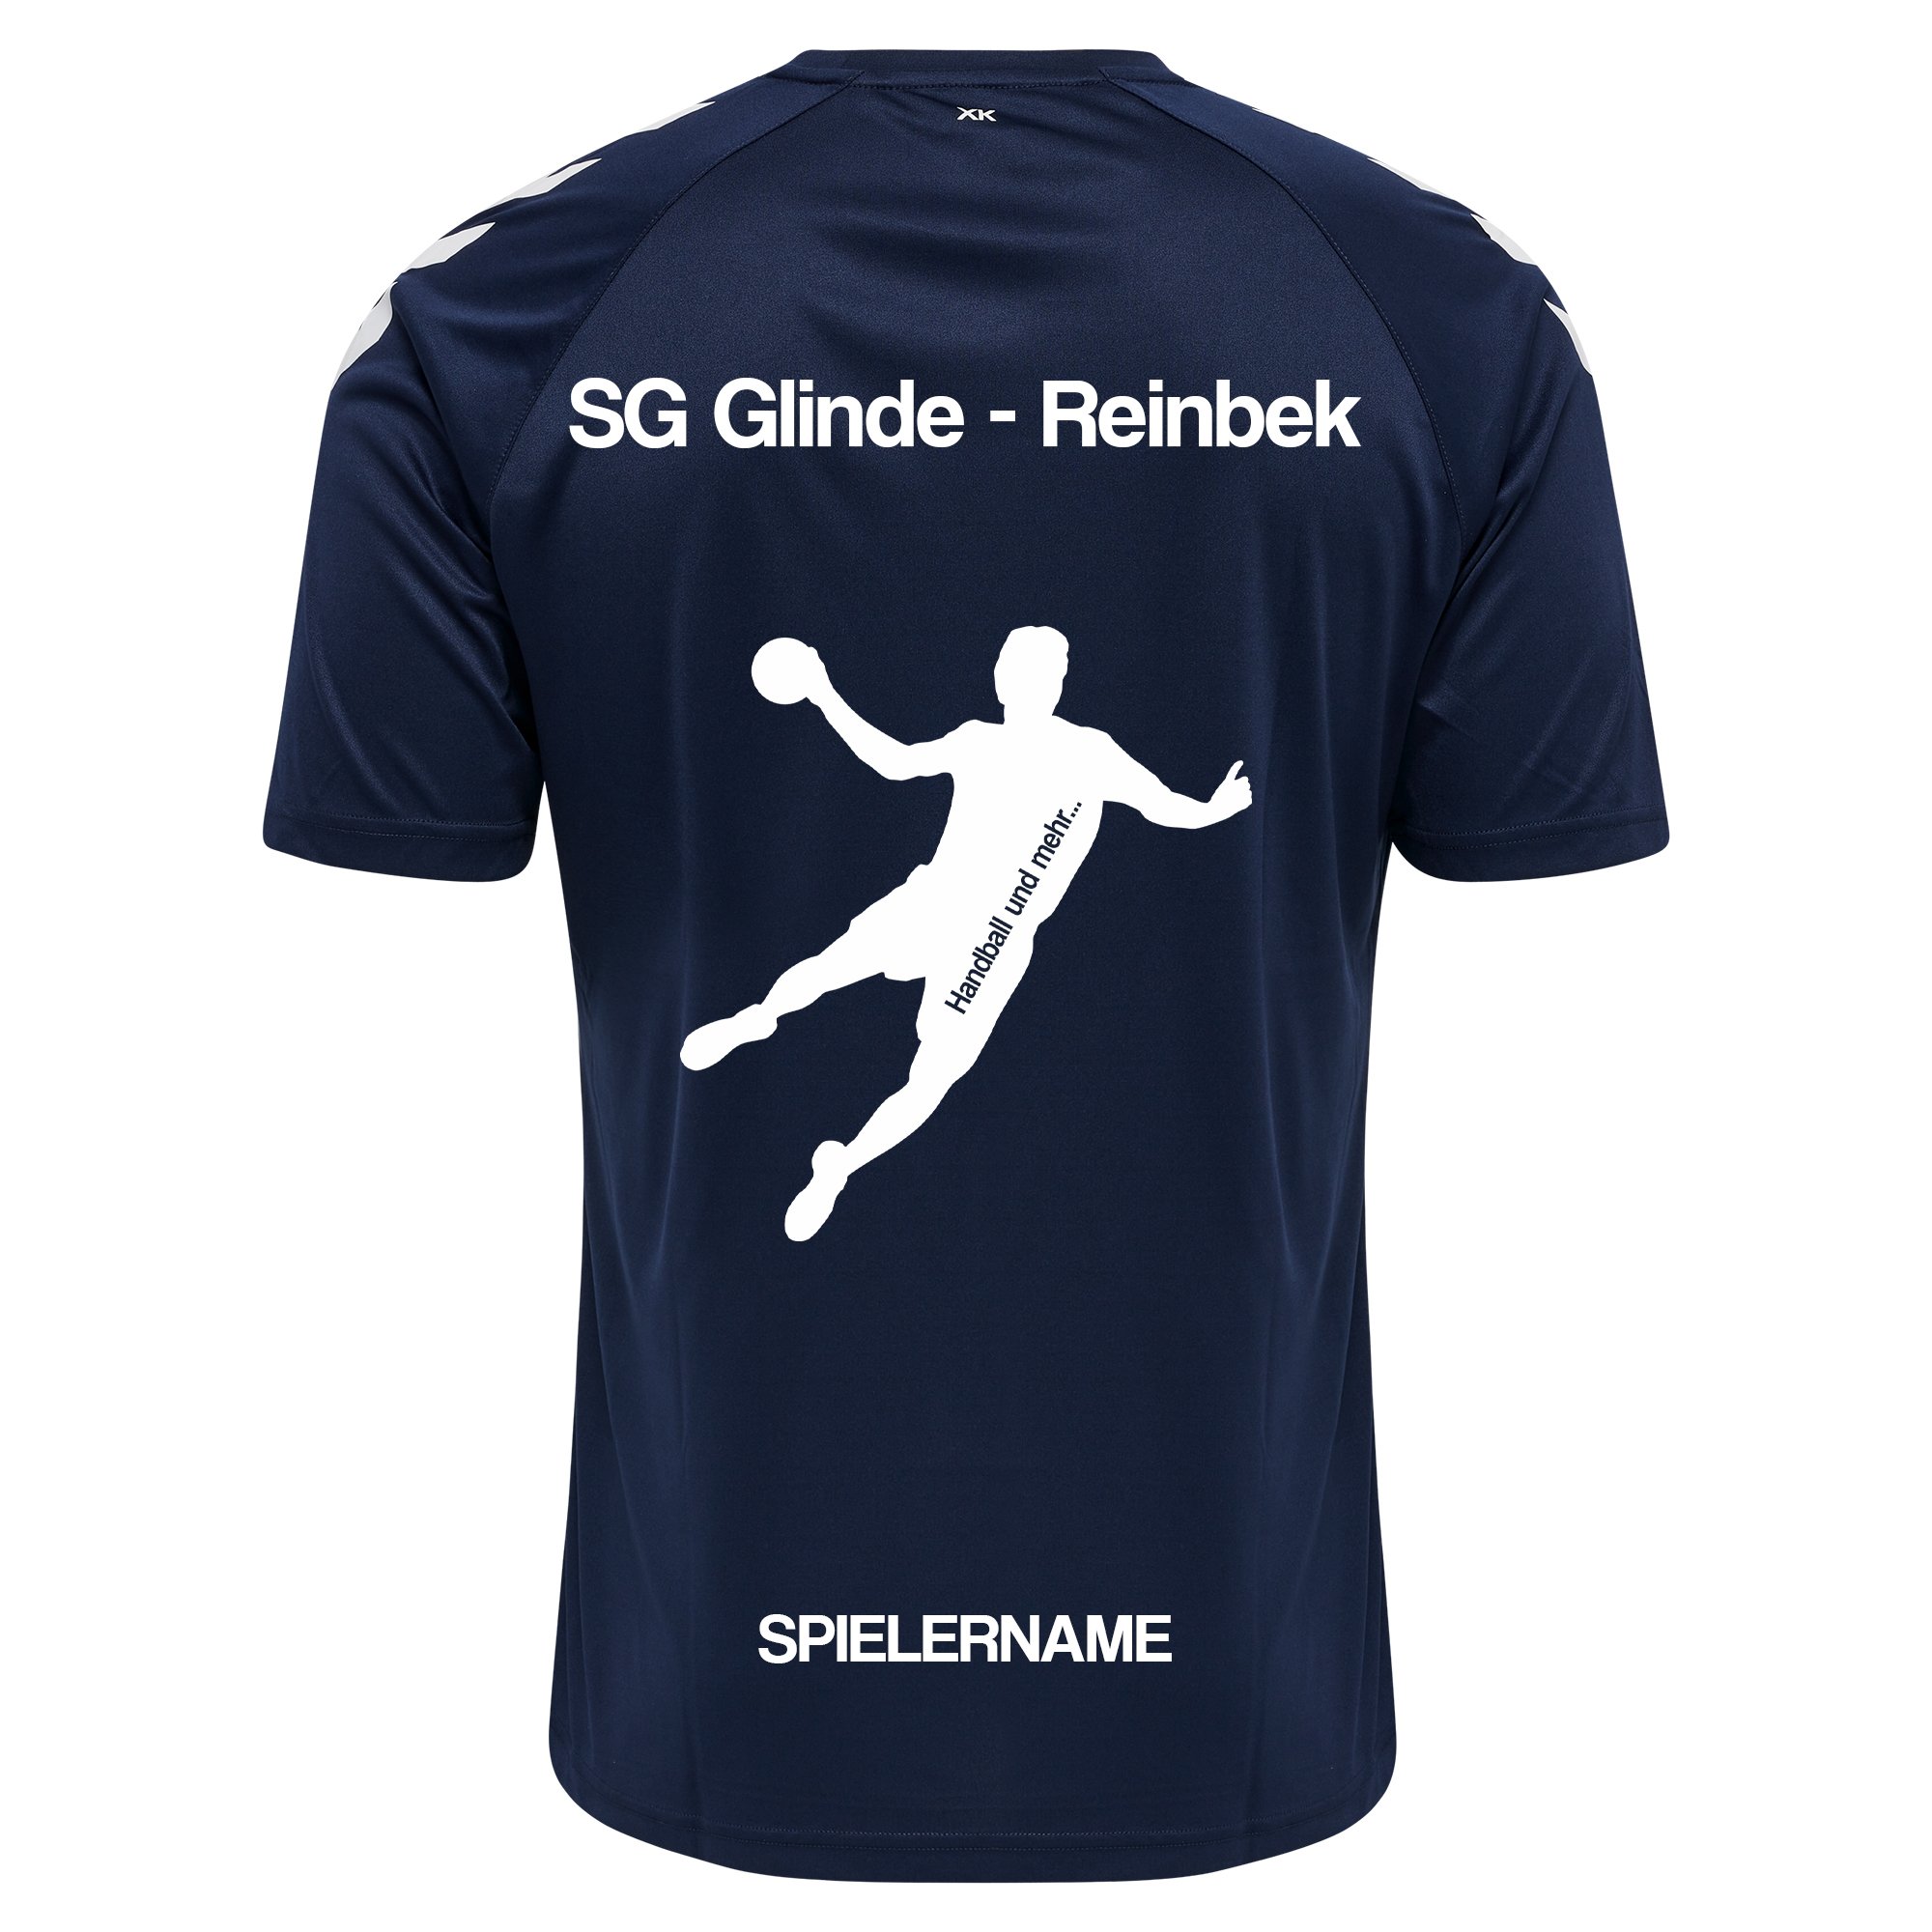 SG Glinde Reinbek Poly T-Shirt